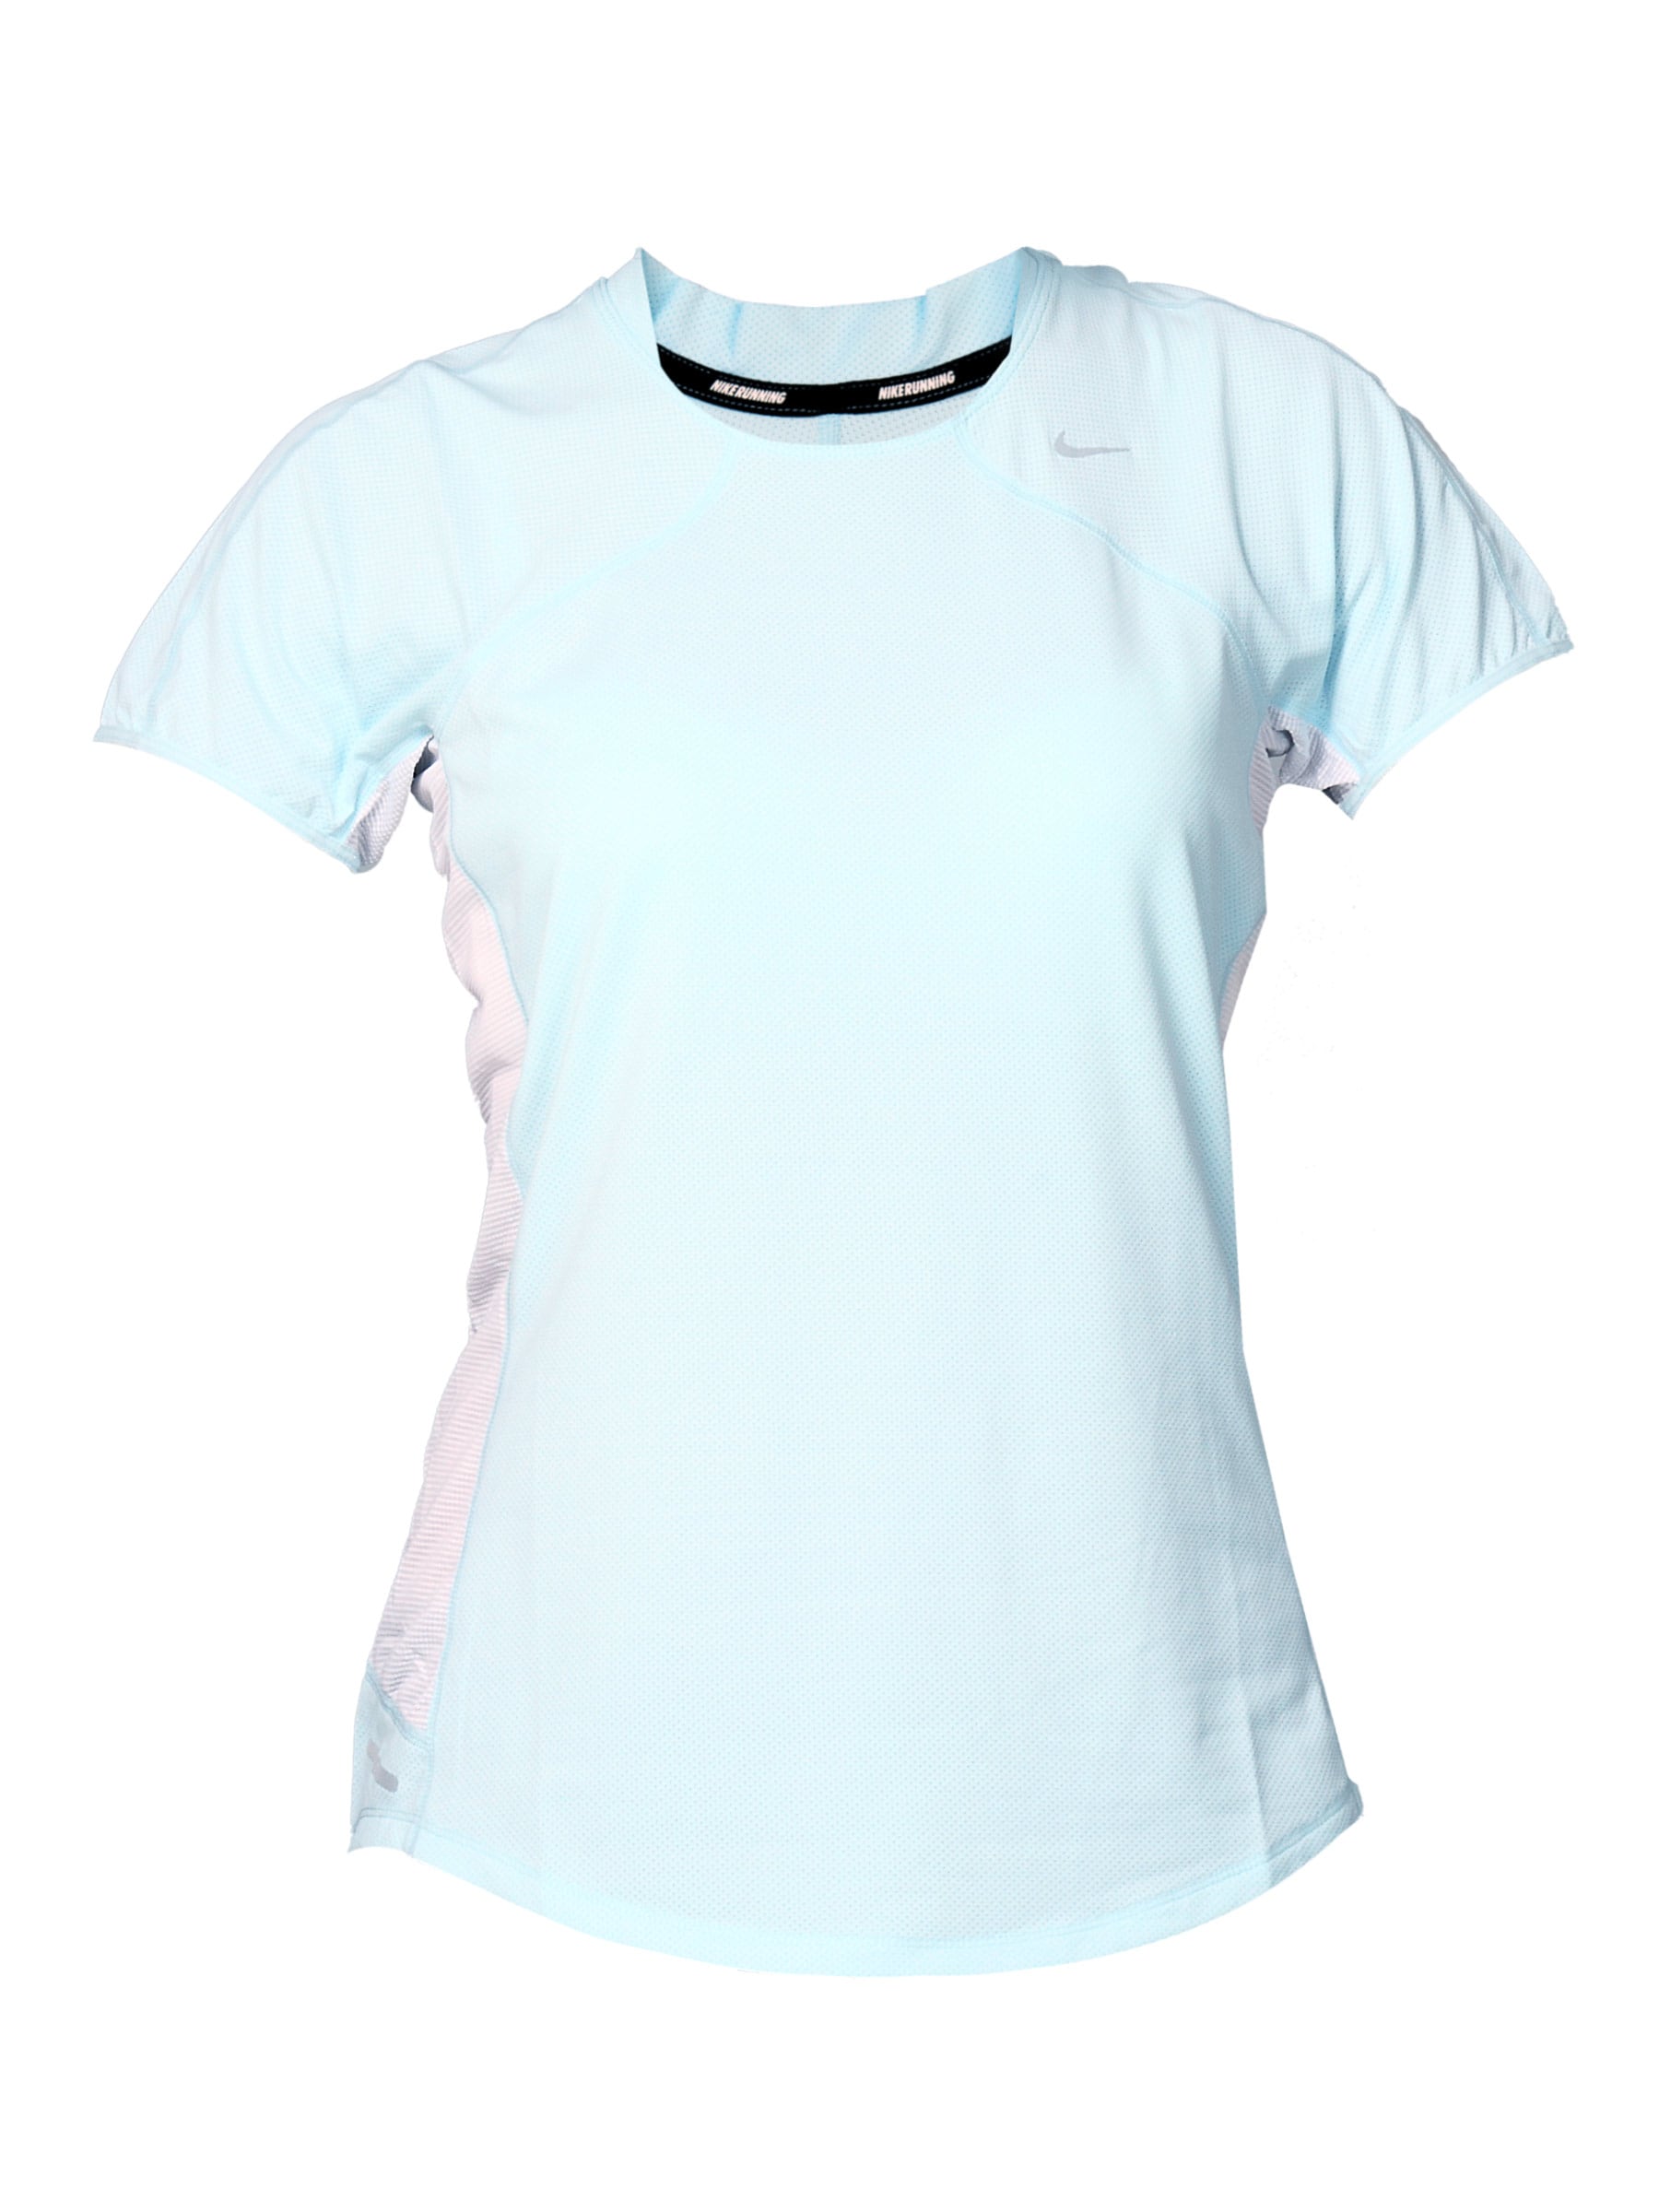 Nike Women's Nike Spher Light Blue T-shirt